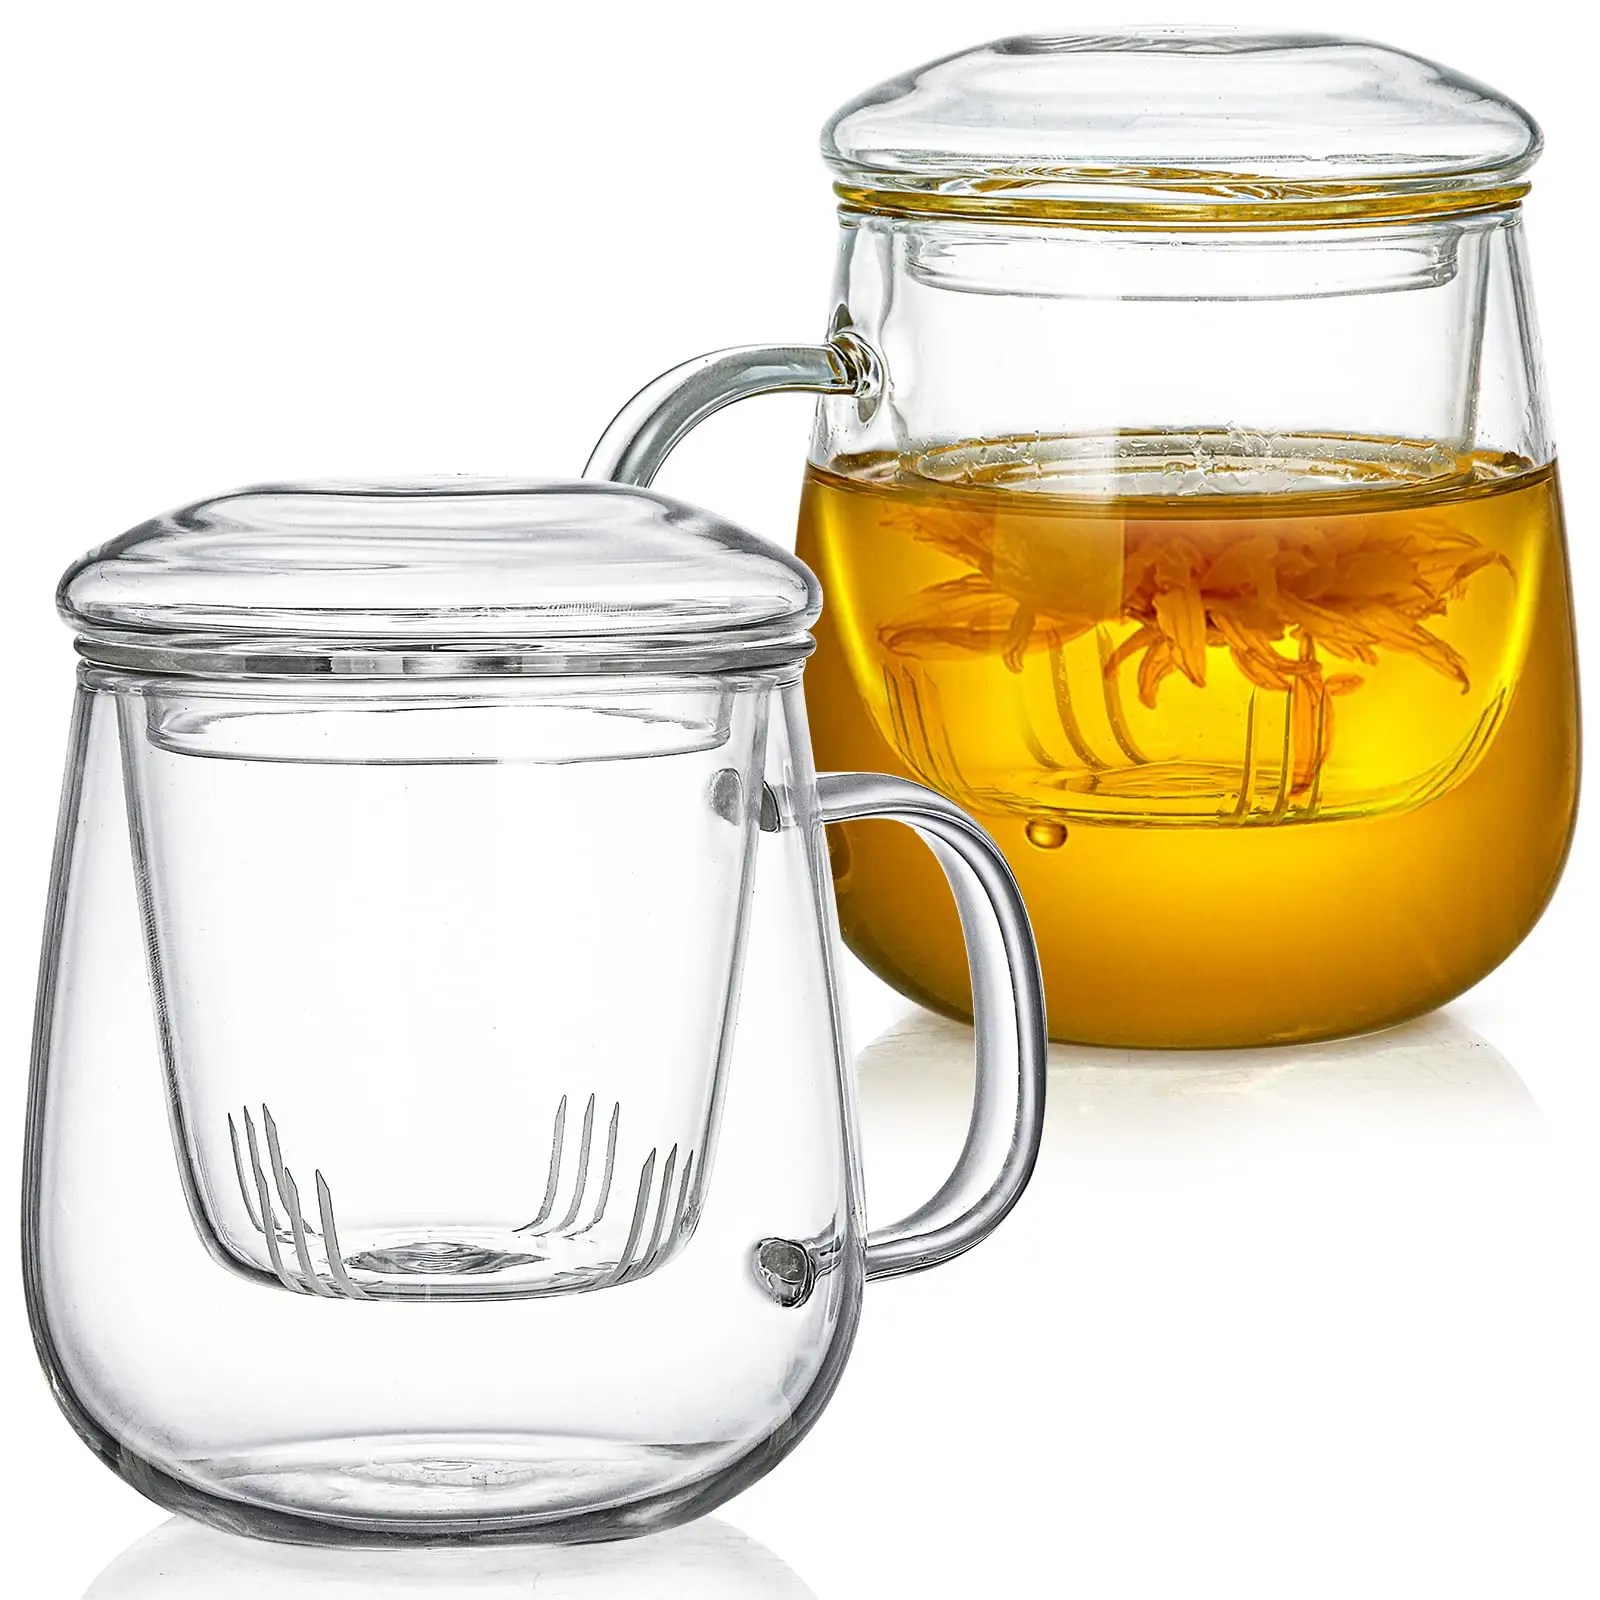 Tazas de té de filtración simple, juego de tazas de té, sistema de elaboración de hojas de té sueltas, tazas de Infusor de té de vidrio de borosilicato con colador y tapa